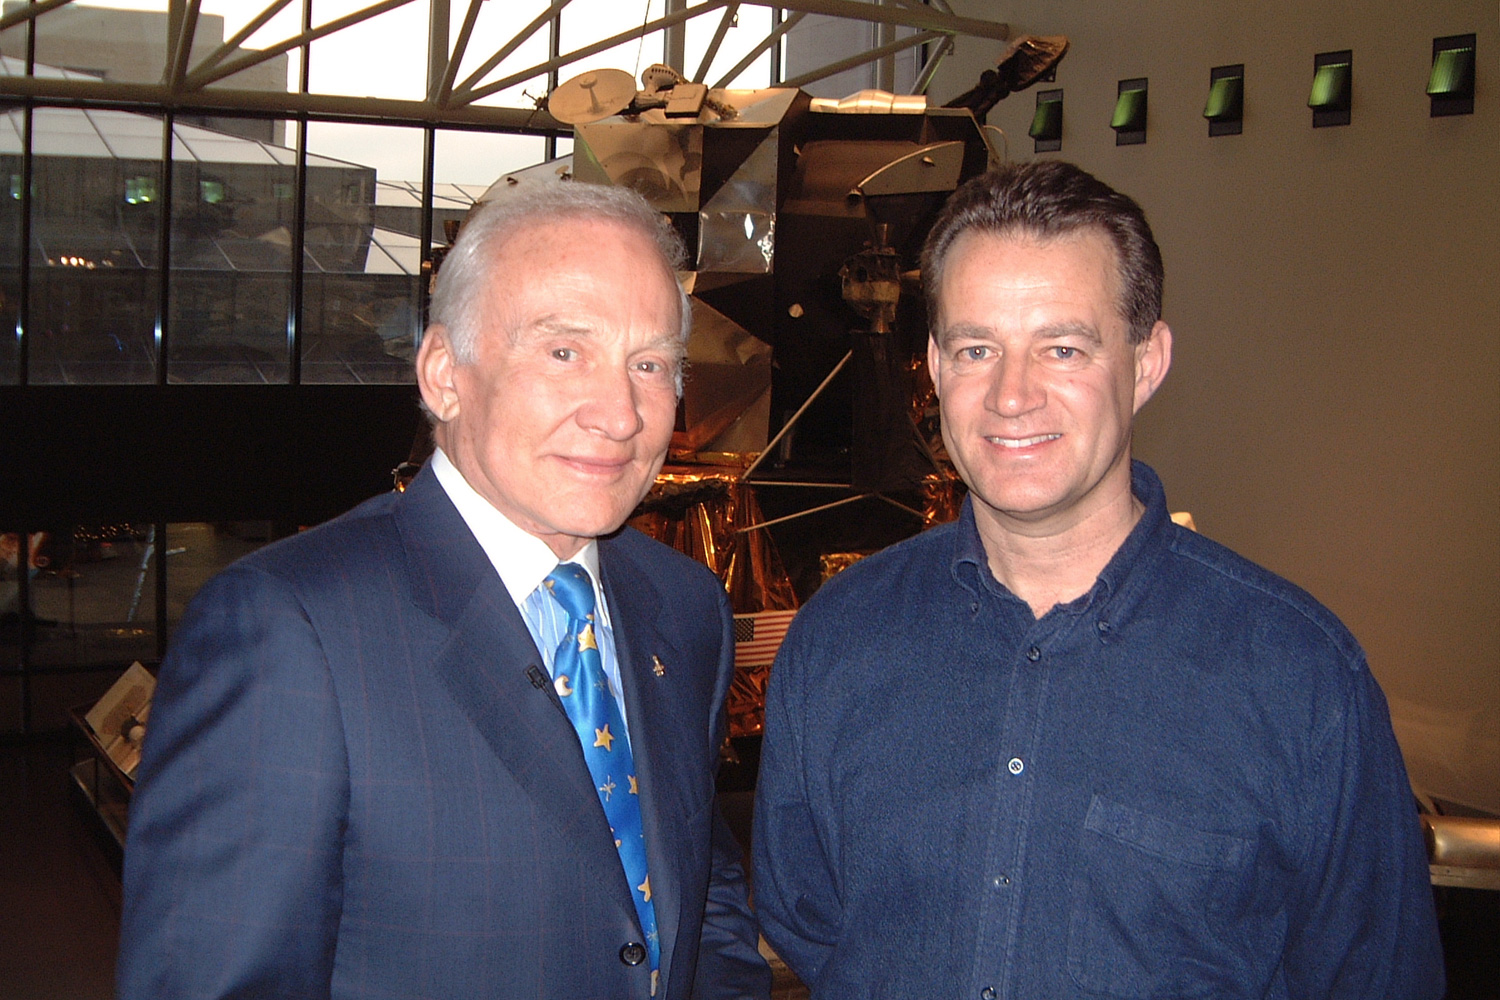 I was lucky enough to meet Buzz Aldrin